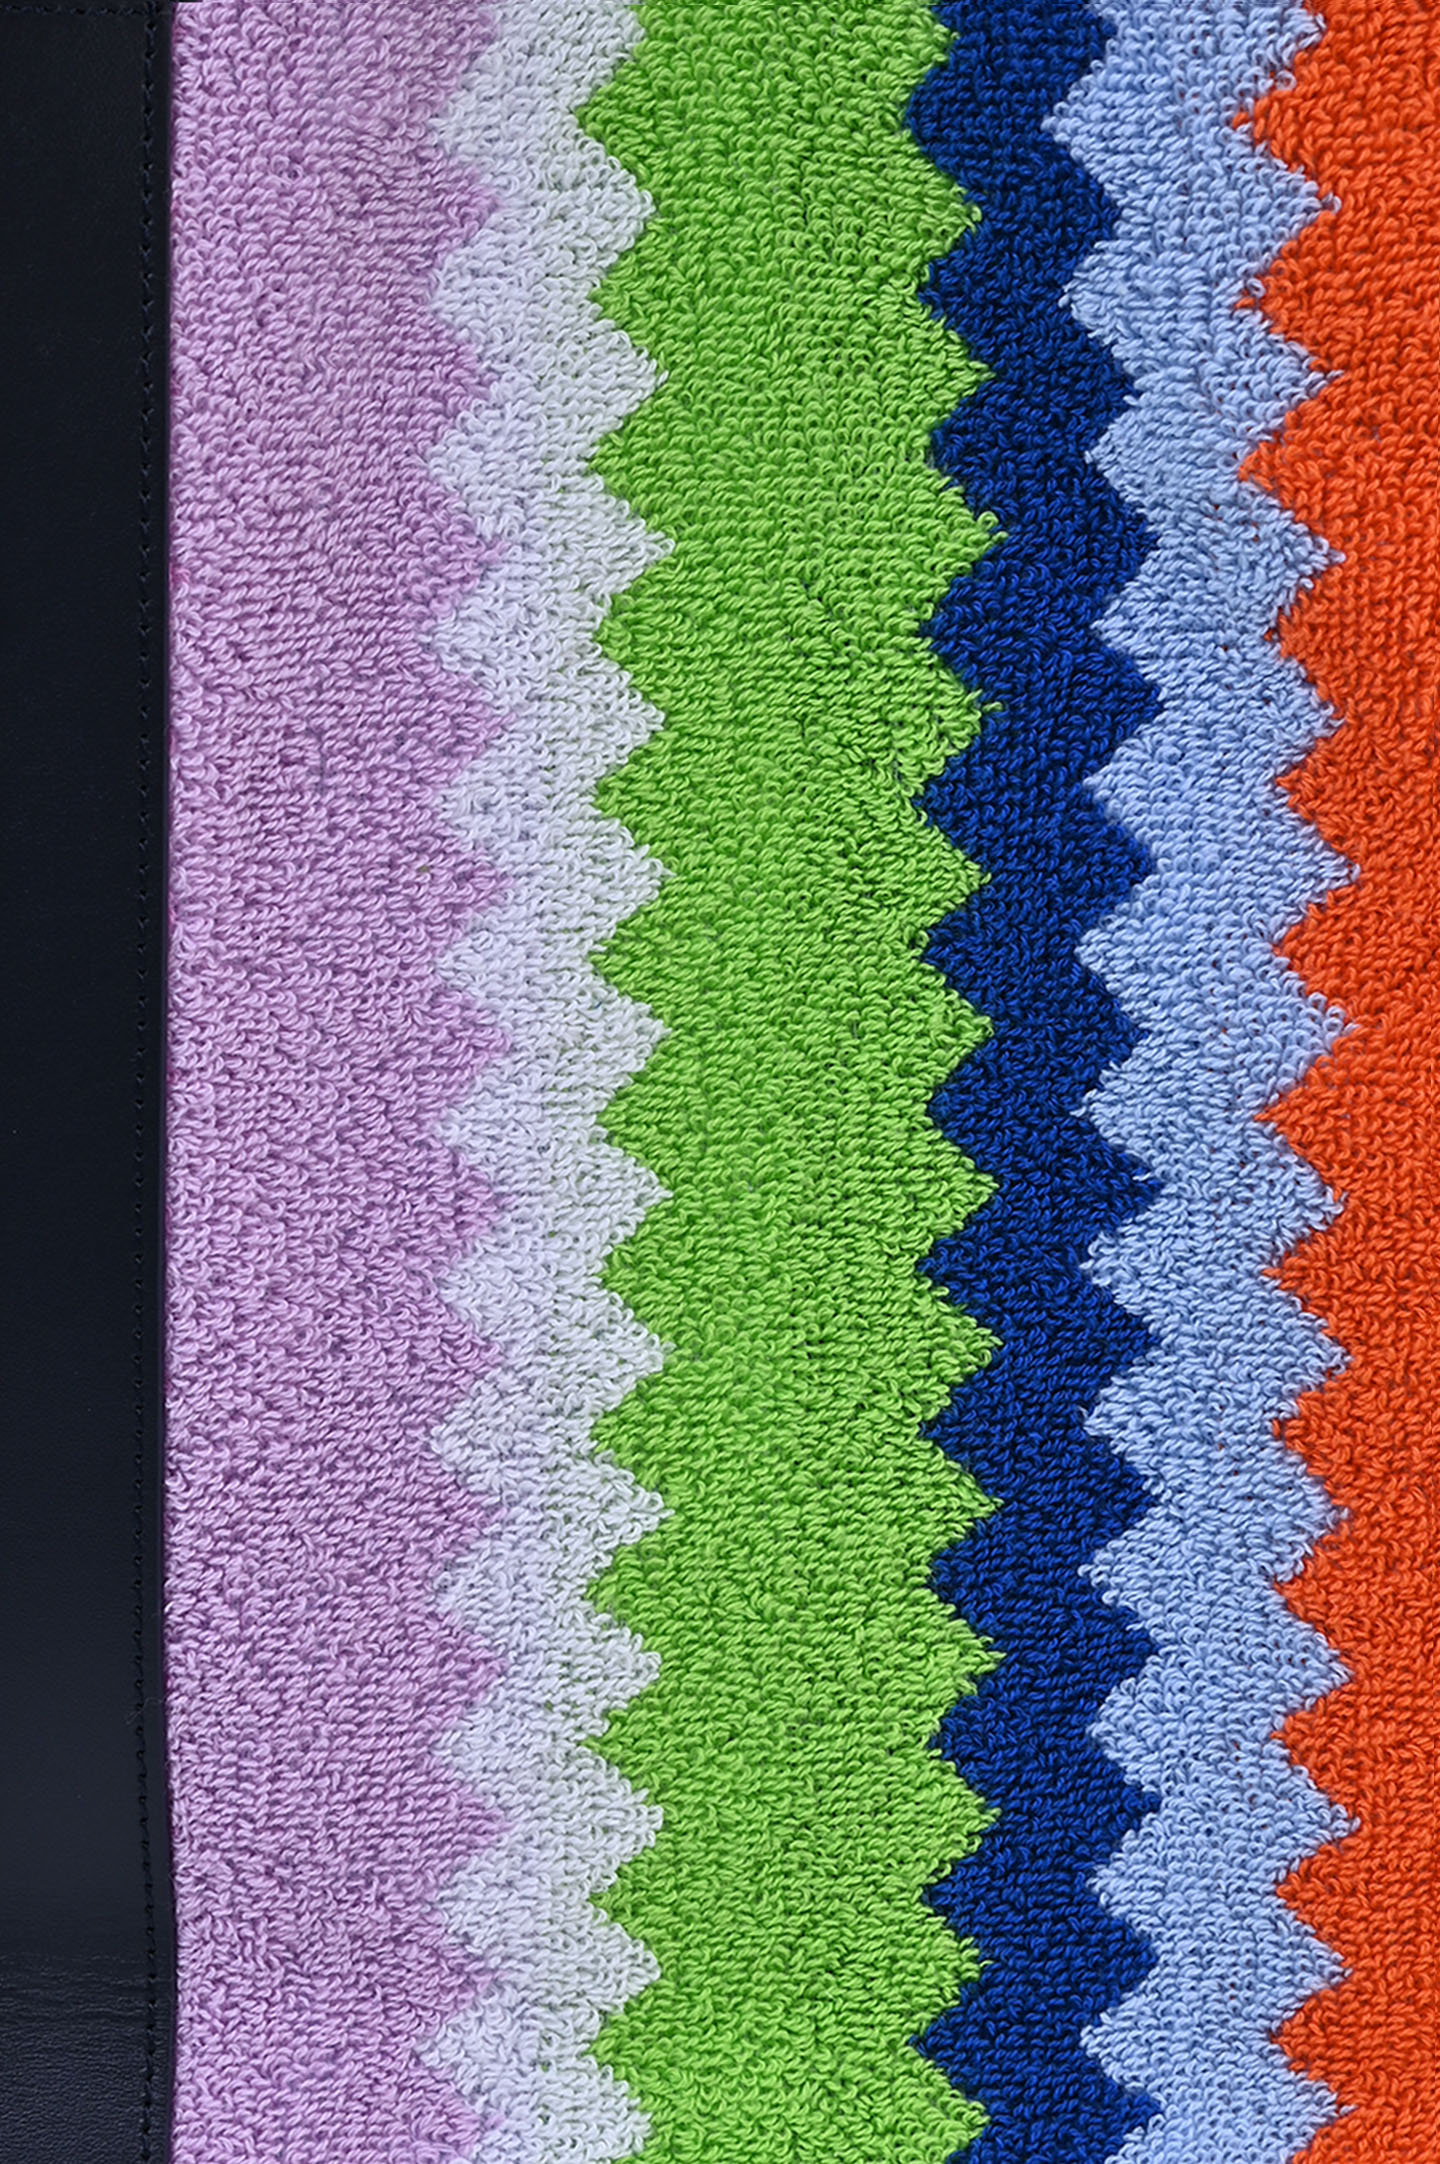 Сумка-шопер текстильная MISSONI 1C3OG00039, цвет: Разноцветный, Женский